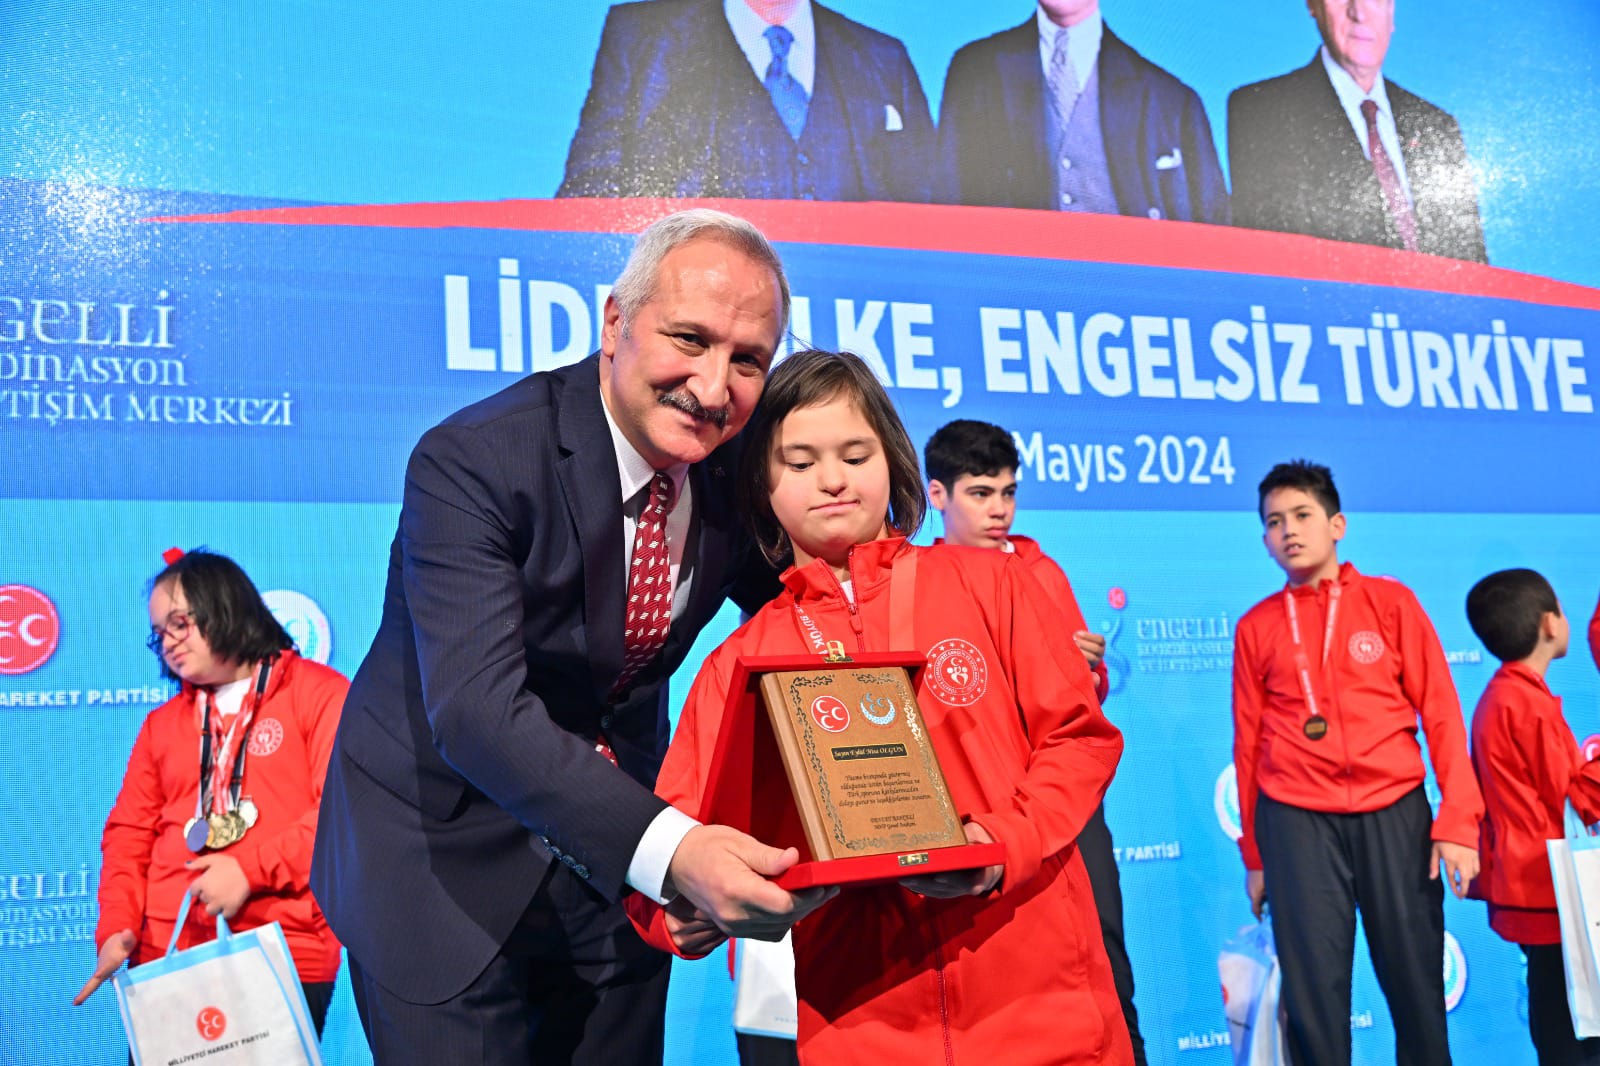 Lider Ülke Engelsiz Türkiye ( Milli Sporcumuz)